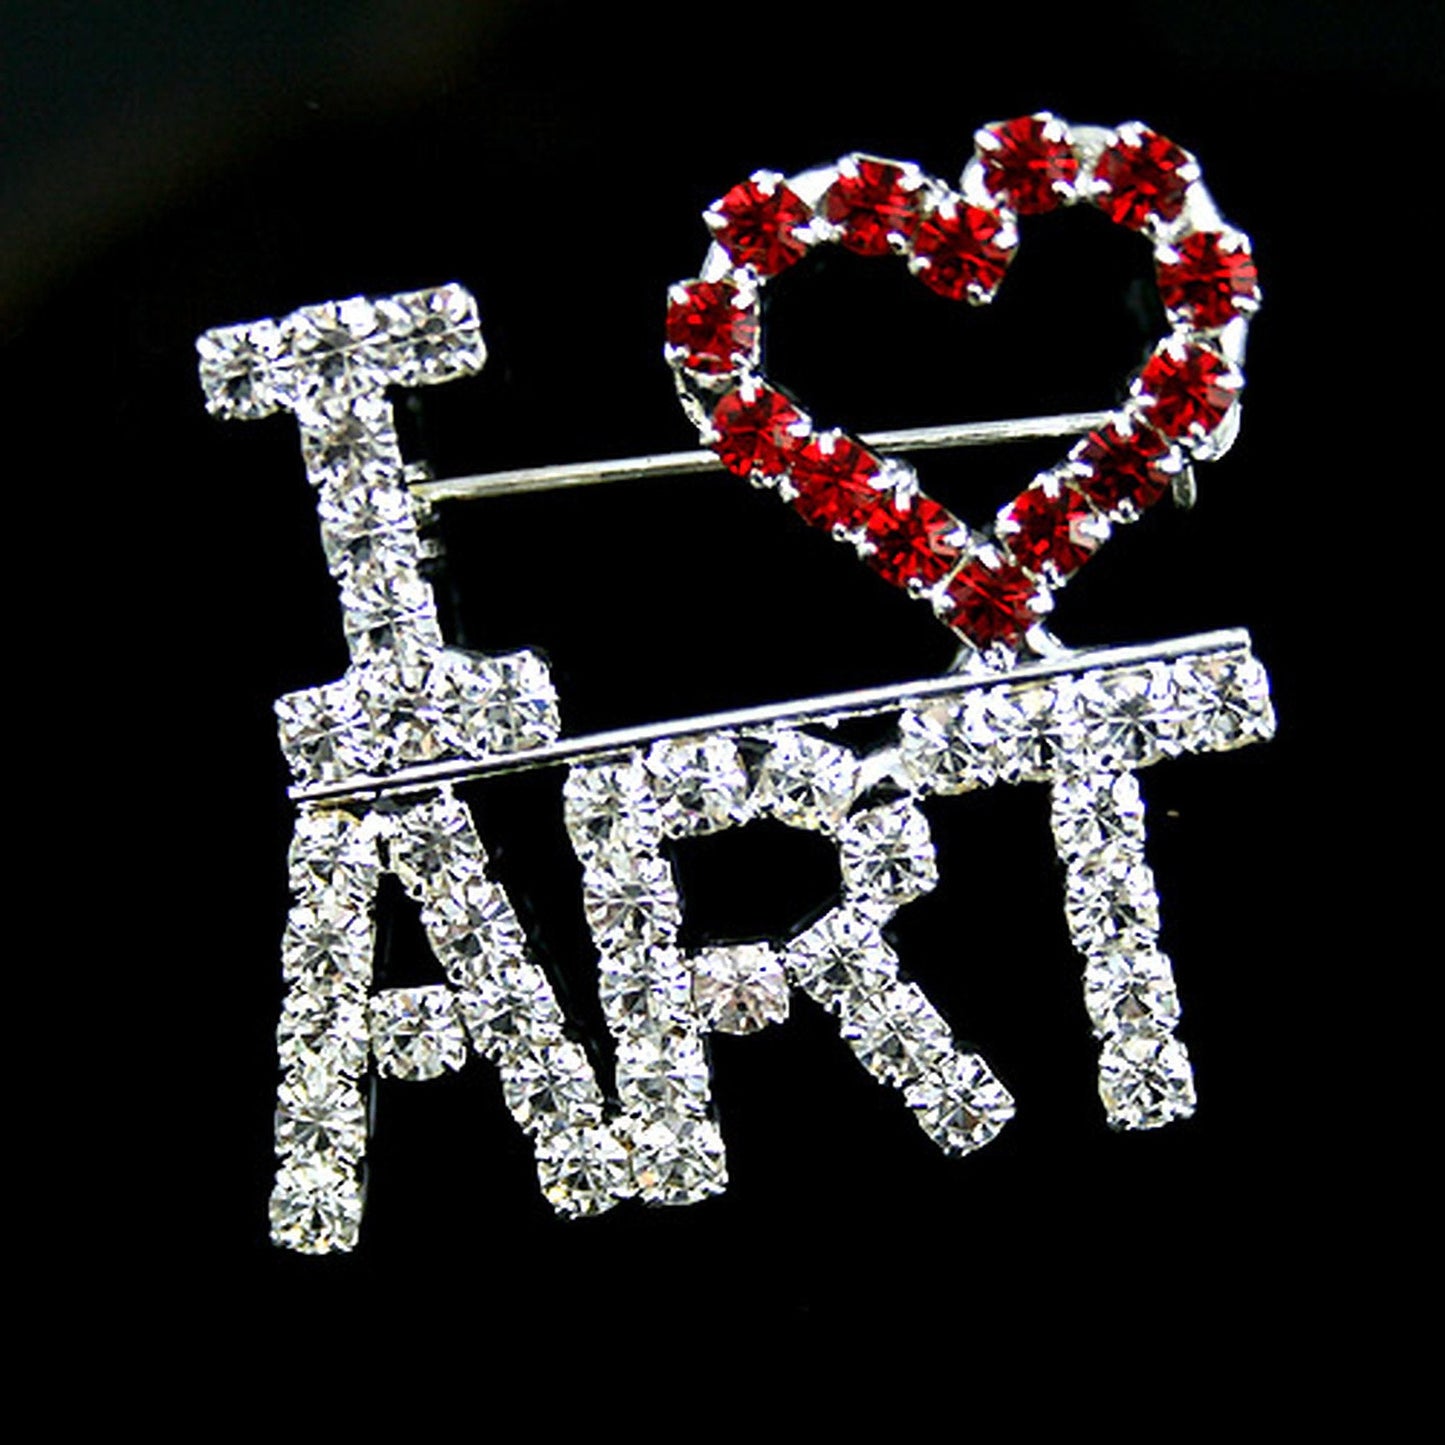 I Love Art Crystal Letter Novelty Artist Painter Brooch Pin